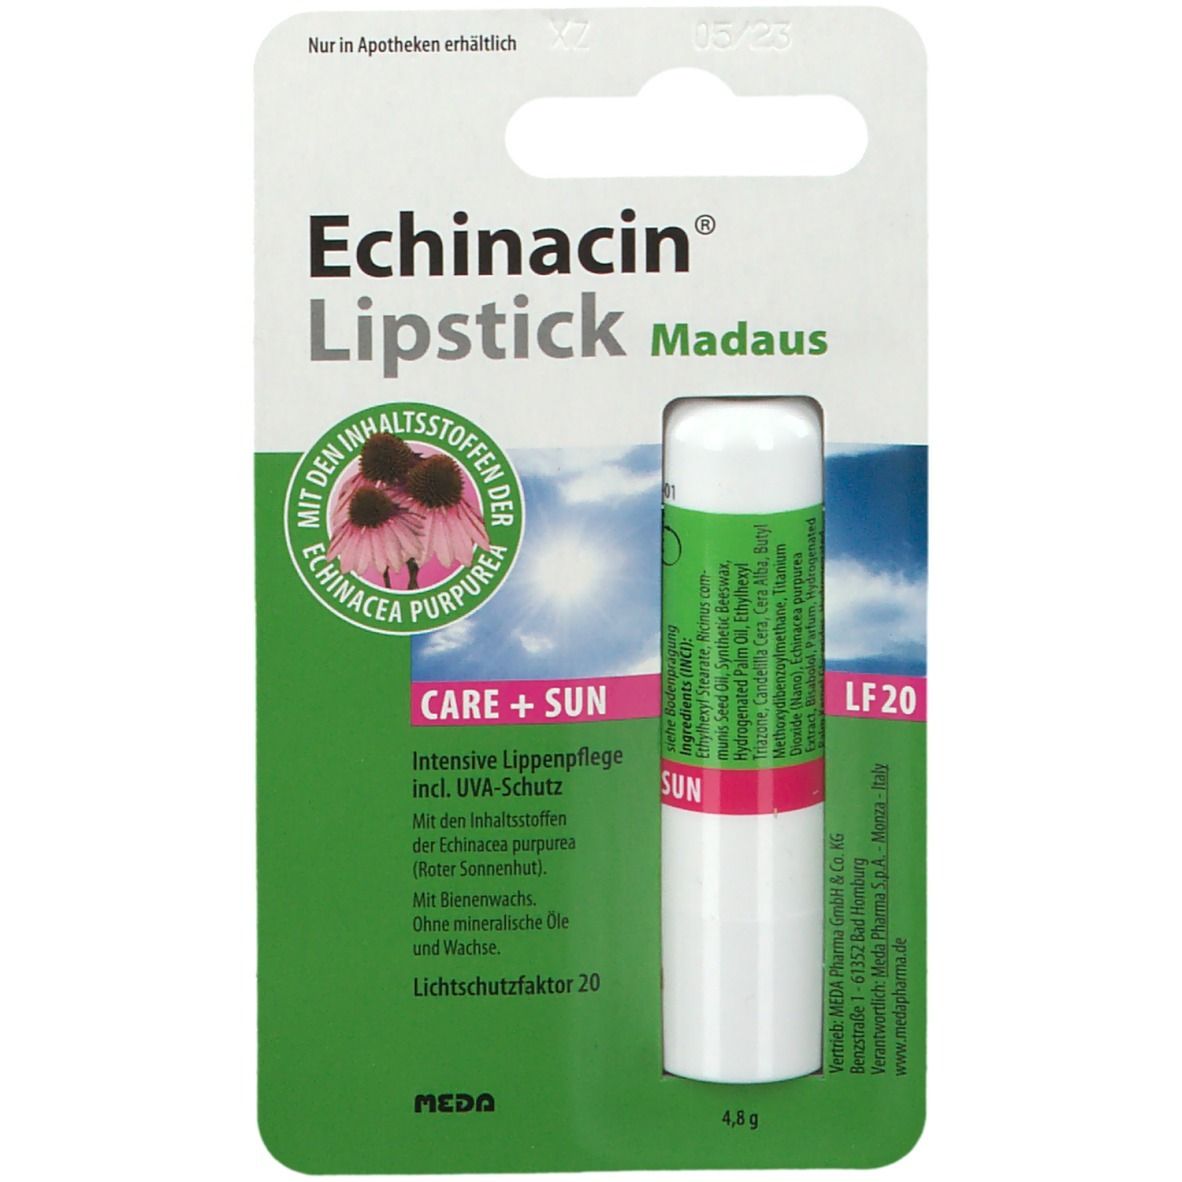 Echinacin® Lipstick Madaus Care + Sun